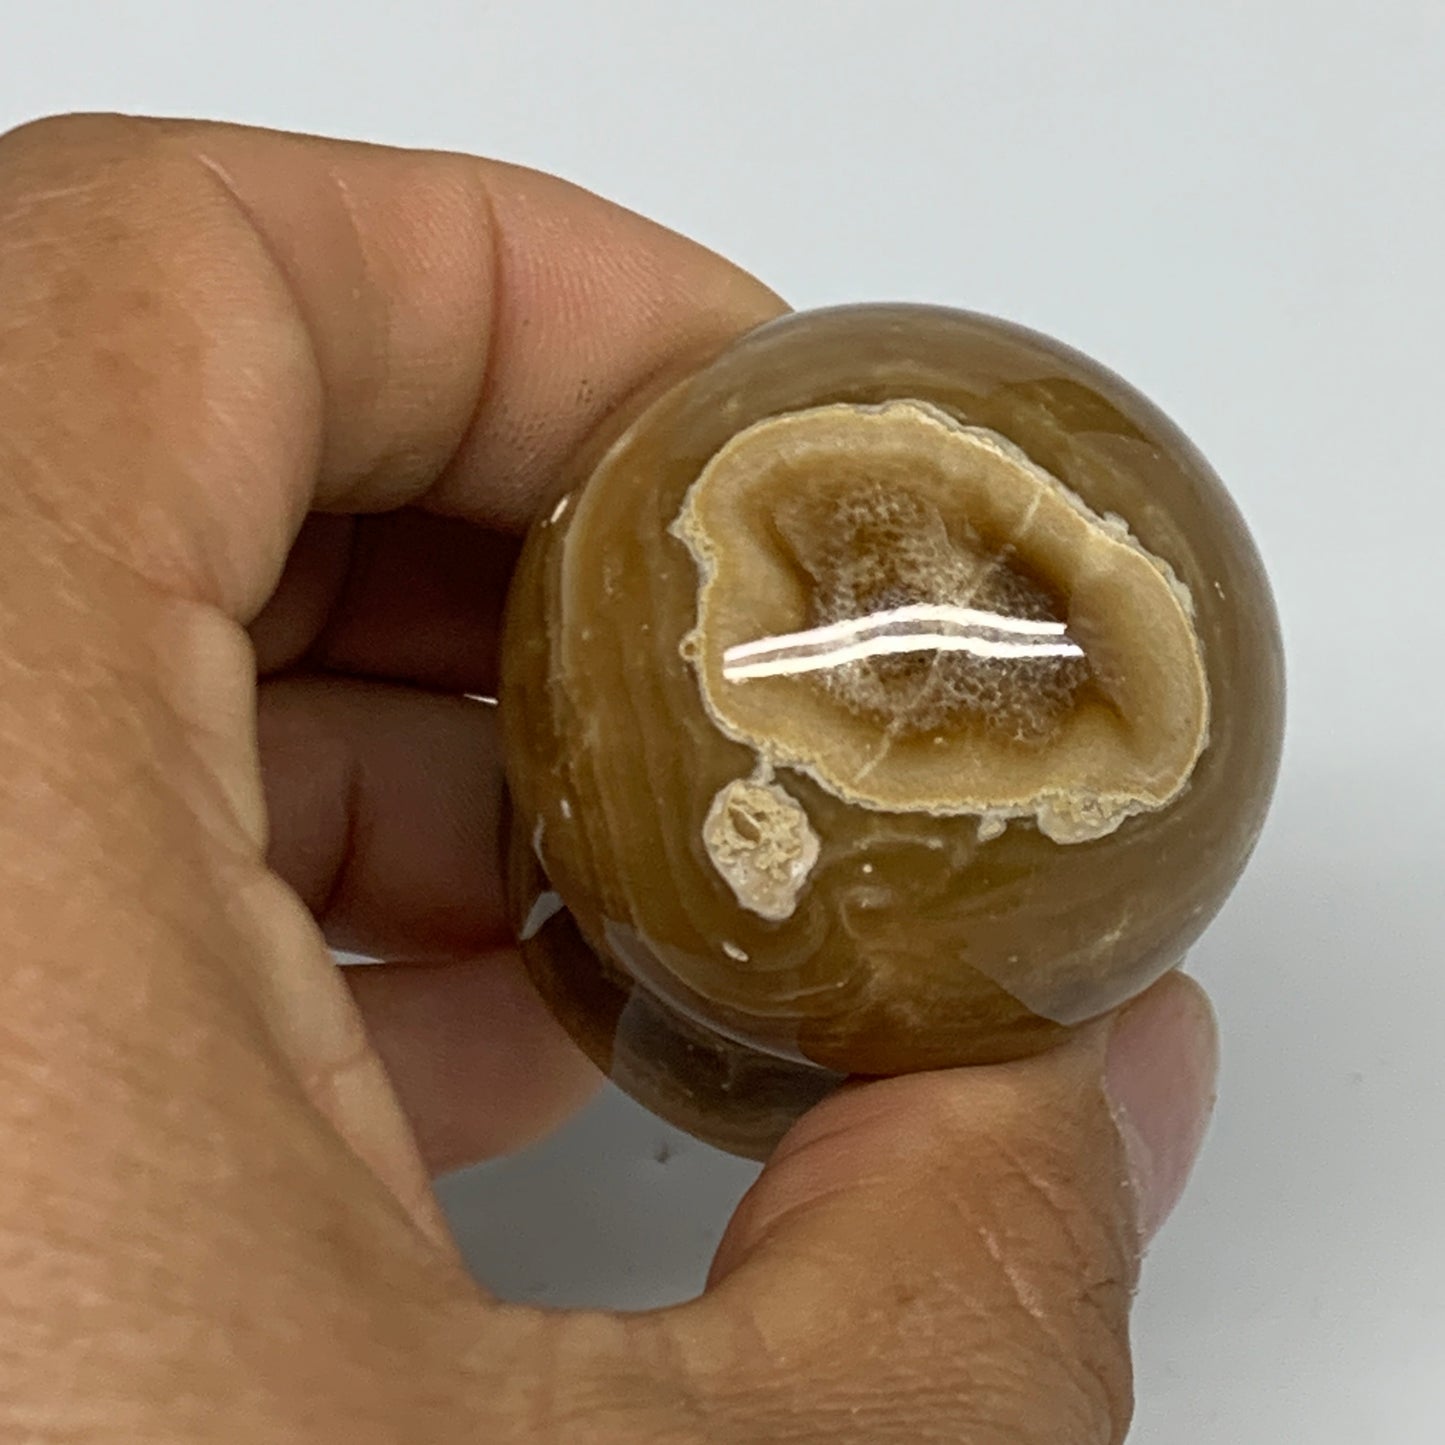 90.4g, 1.6x1.4", Chocolate Calcite Mushroom 2 Pieces bonded @Pakistan, B31697